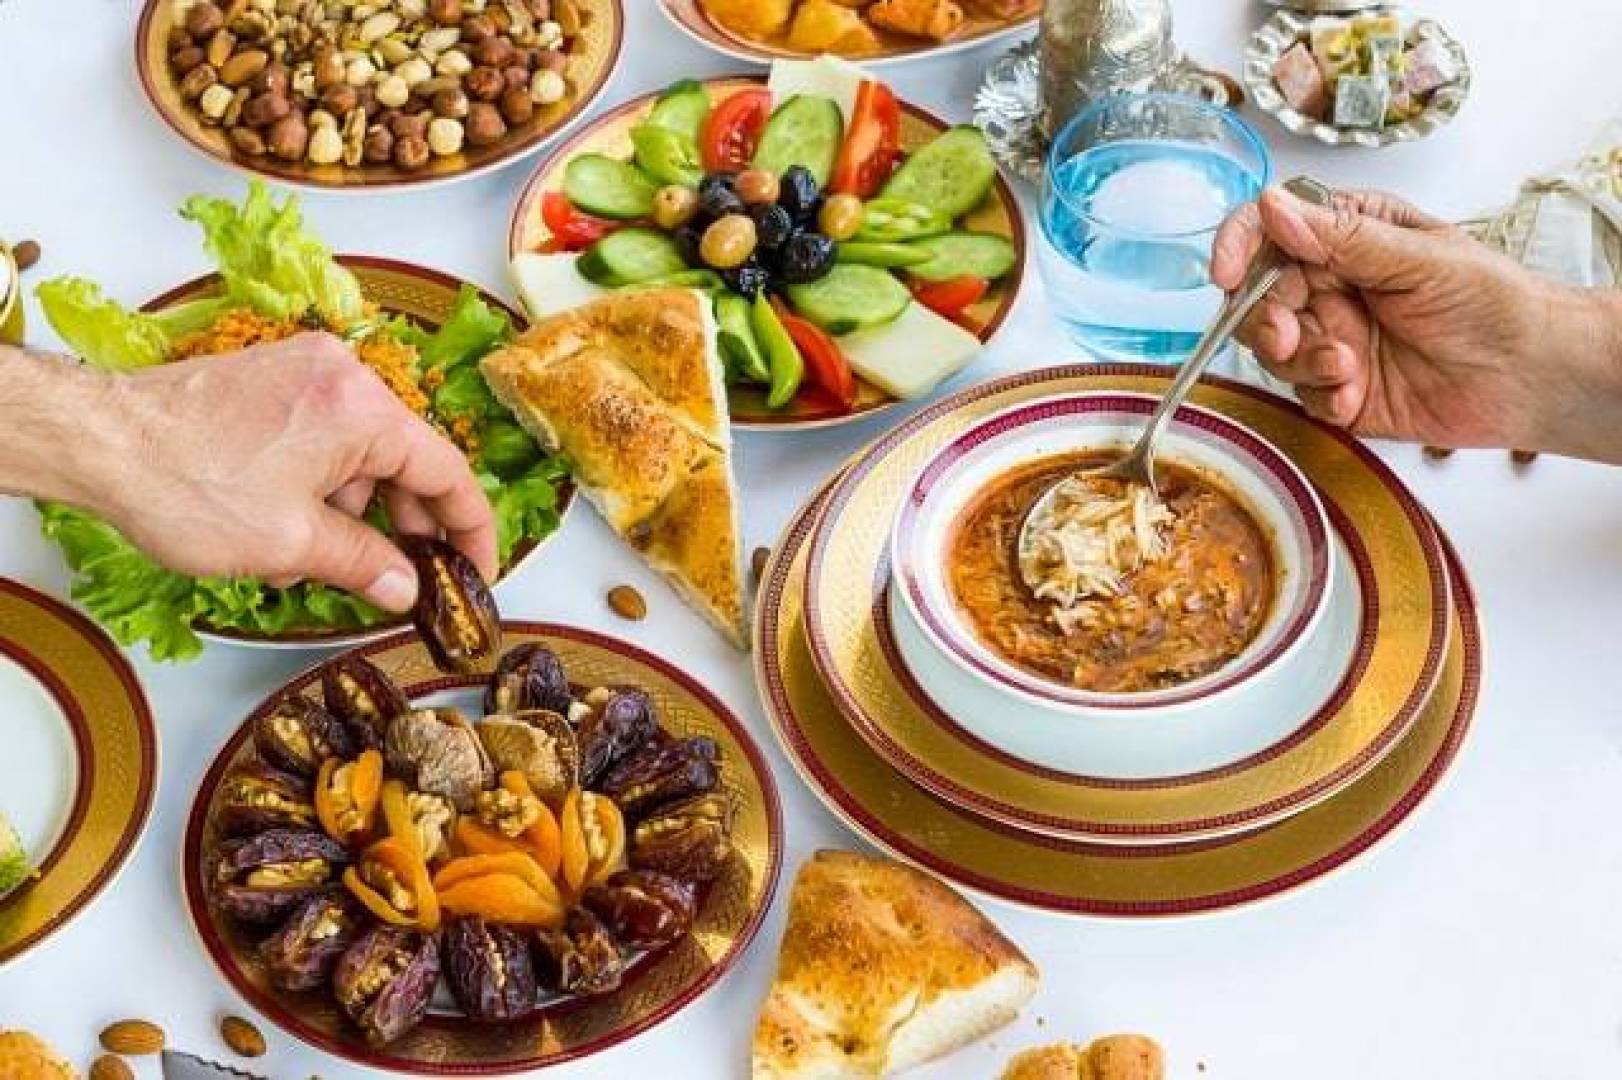 نصائح صحية هامة لأول وجبة إفطار في رمضان